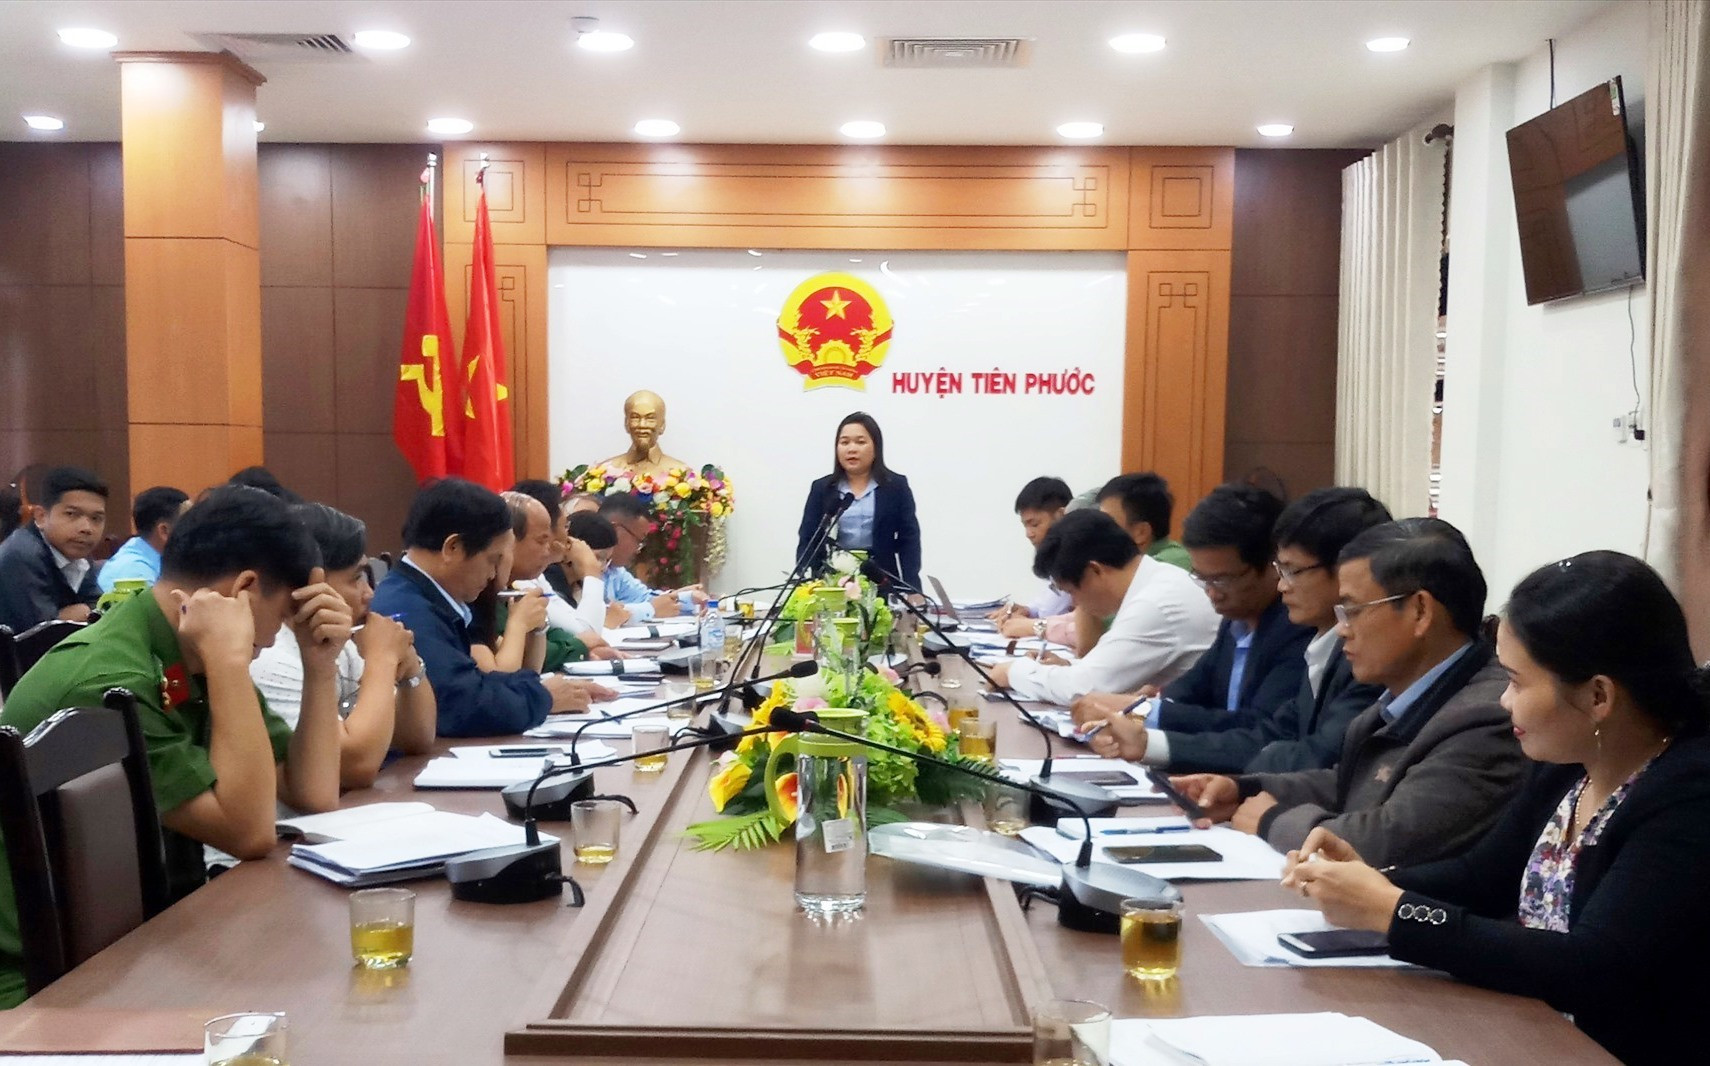 Đoàn công tác Ủy ban Bầu cử tỉnh do đồng chí Huỳnh Thị Thùy Dung Trưởng Ban Dân vận Tỉnh ủy dẫn đầu đến kiểm tra, giám sát công tác chuẩn bị bầu cử tại huyện Tiên Phước.